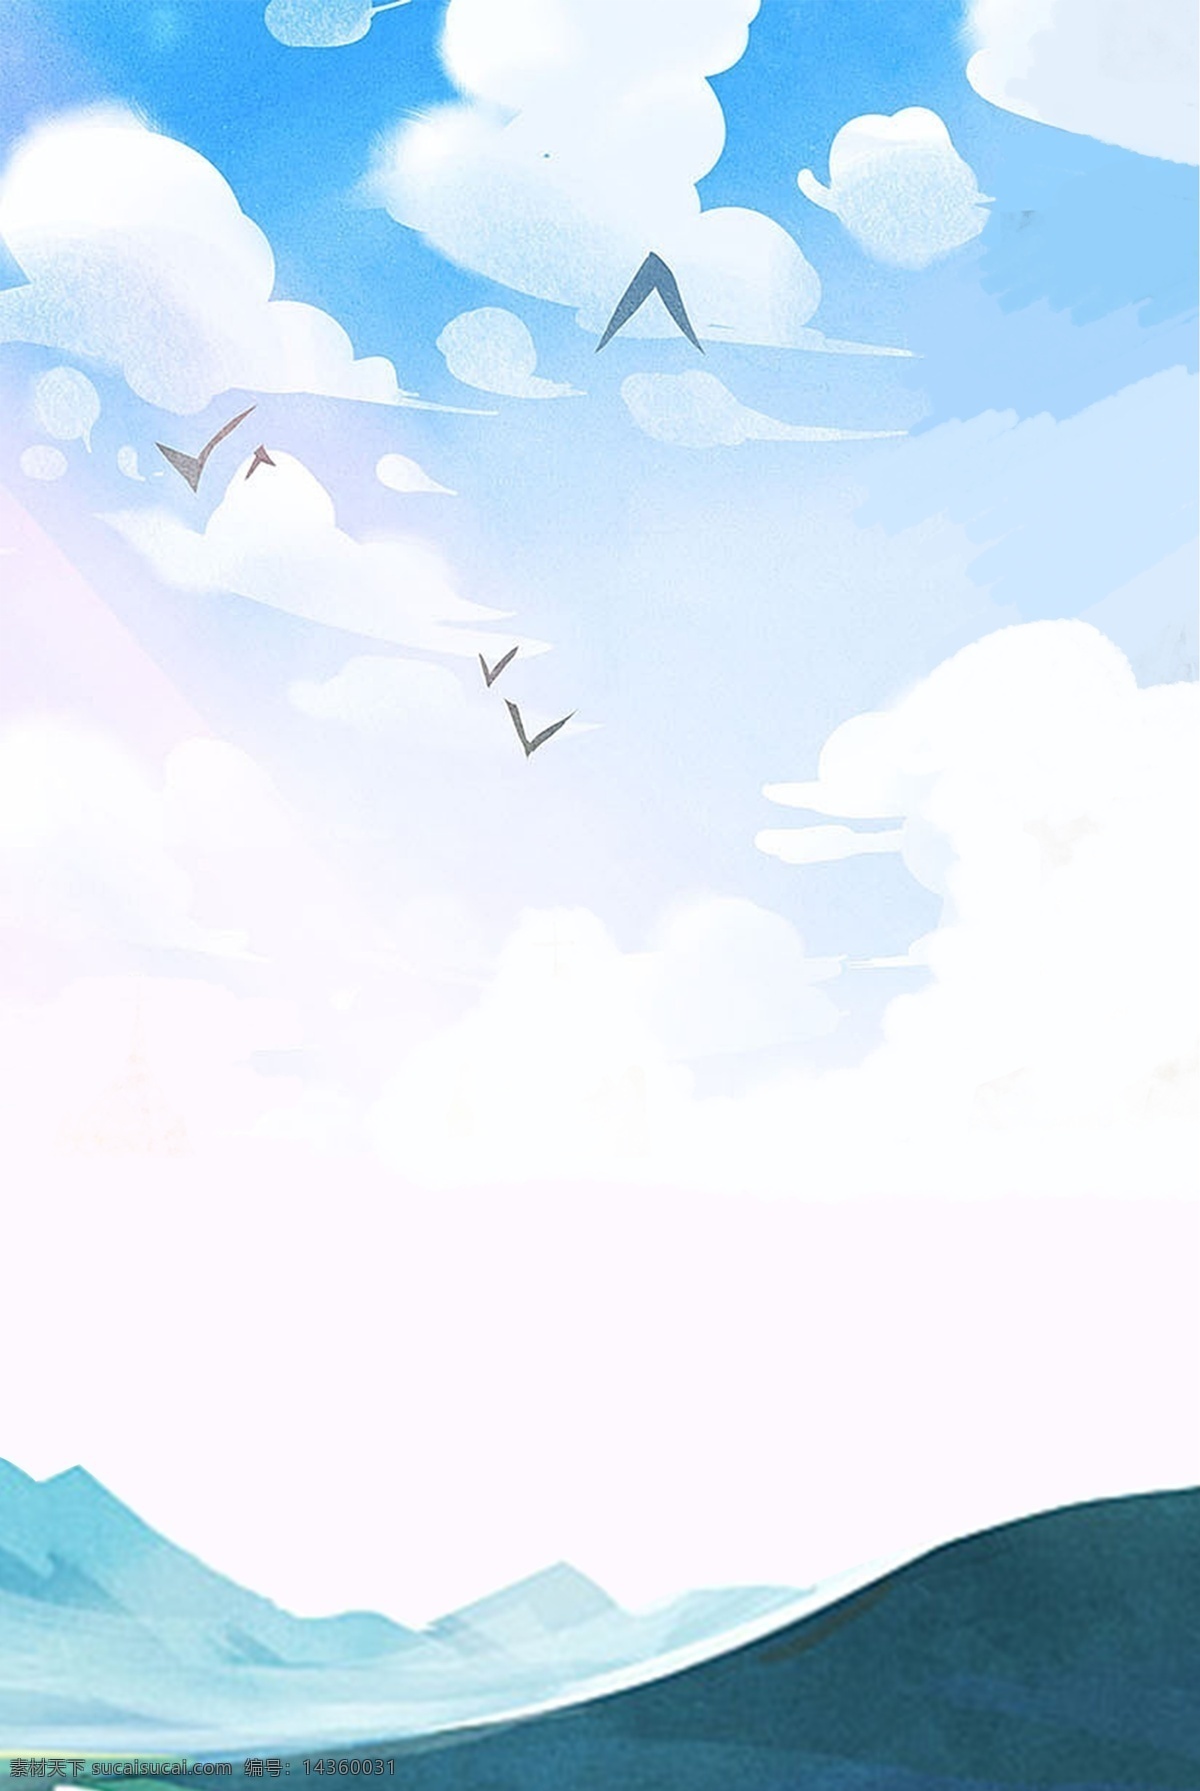 自然风光 水彩 卡通 背景 蓝天 白云 飞鸟 手绘 山峰